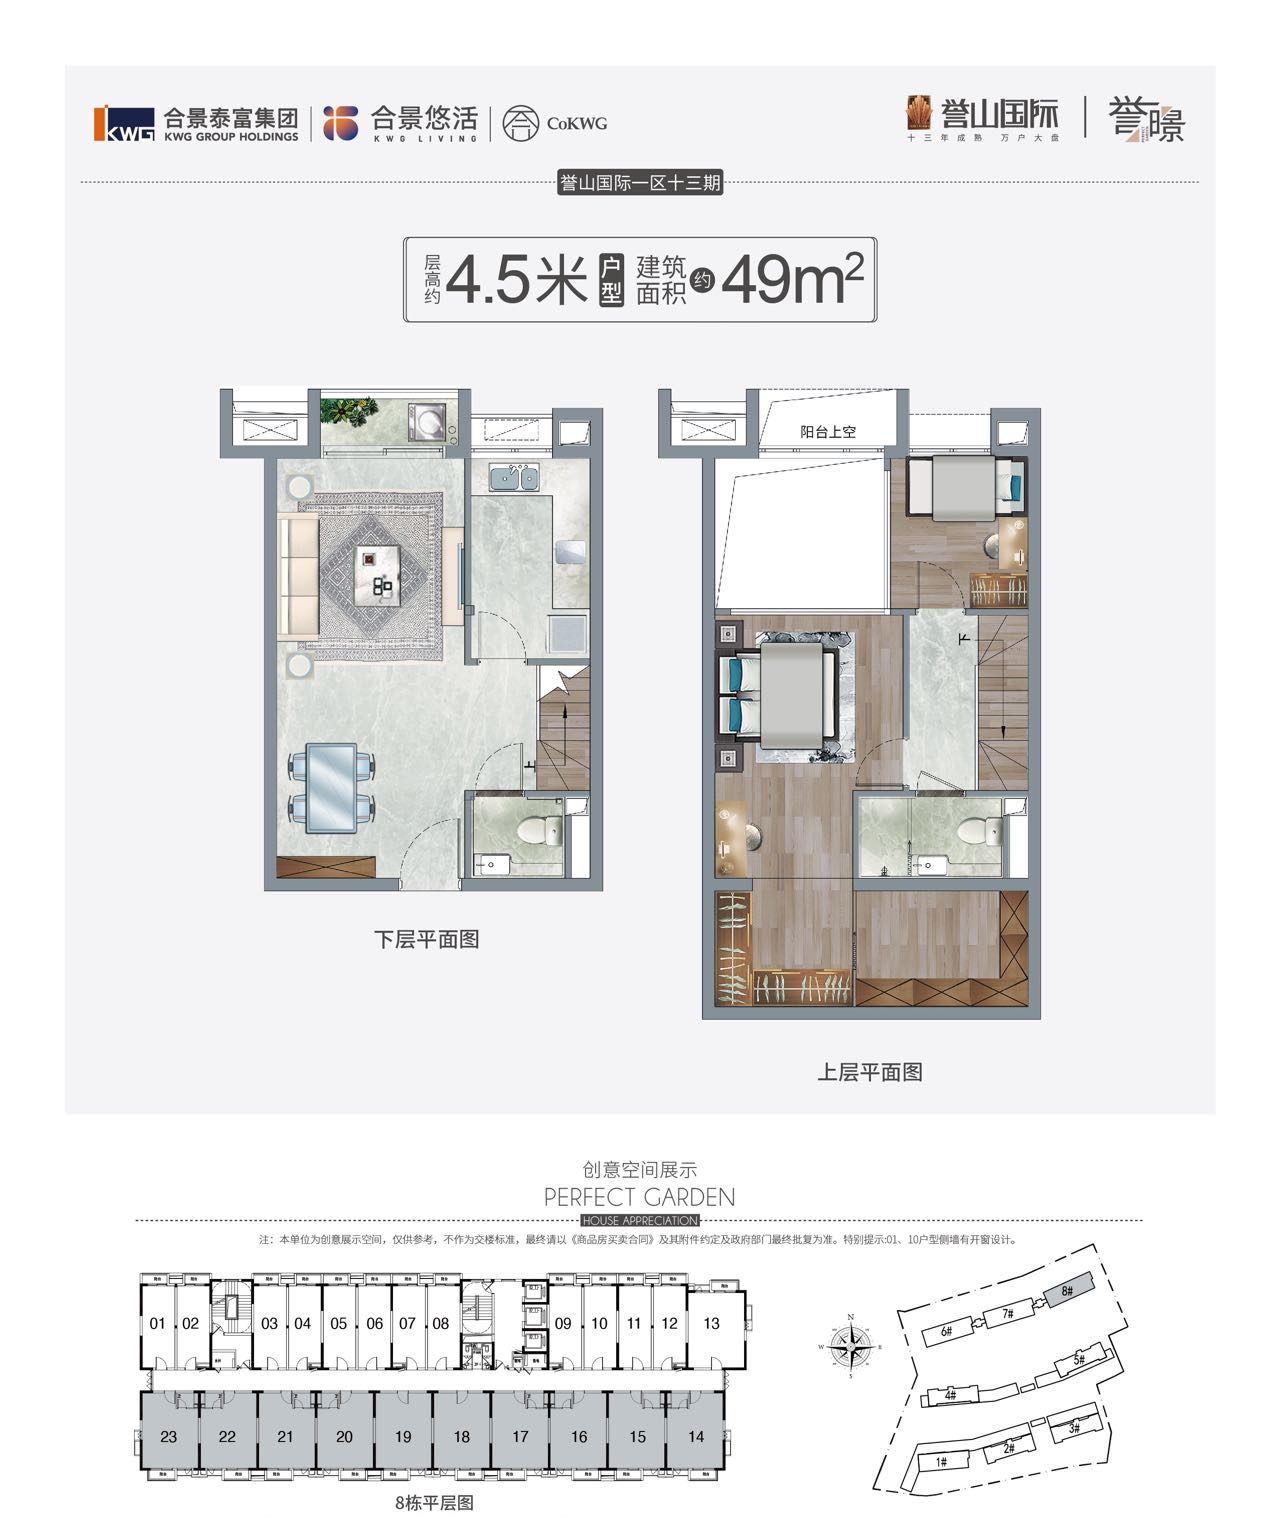 合景誉山国际  公寓 4 9 平米